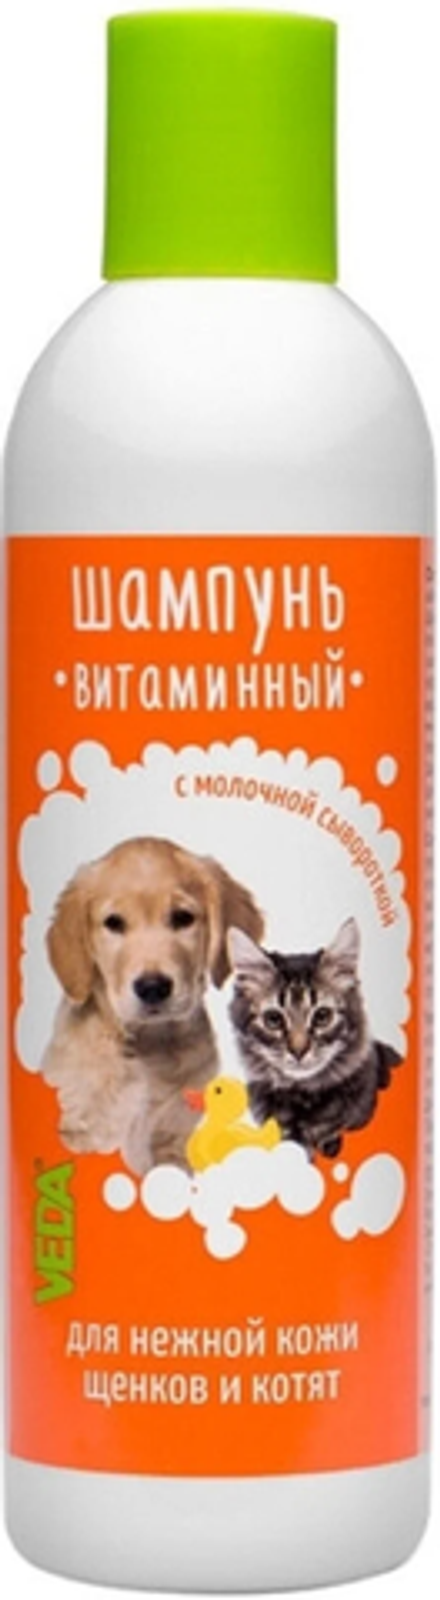 Веда шампунь витаминный для щенков и котят